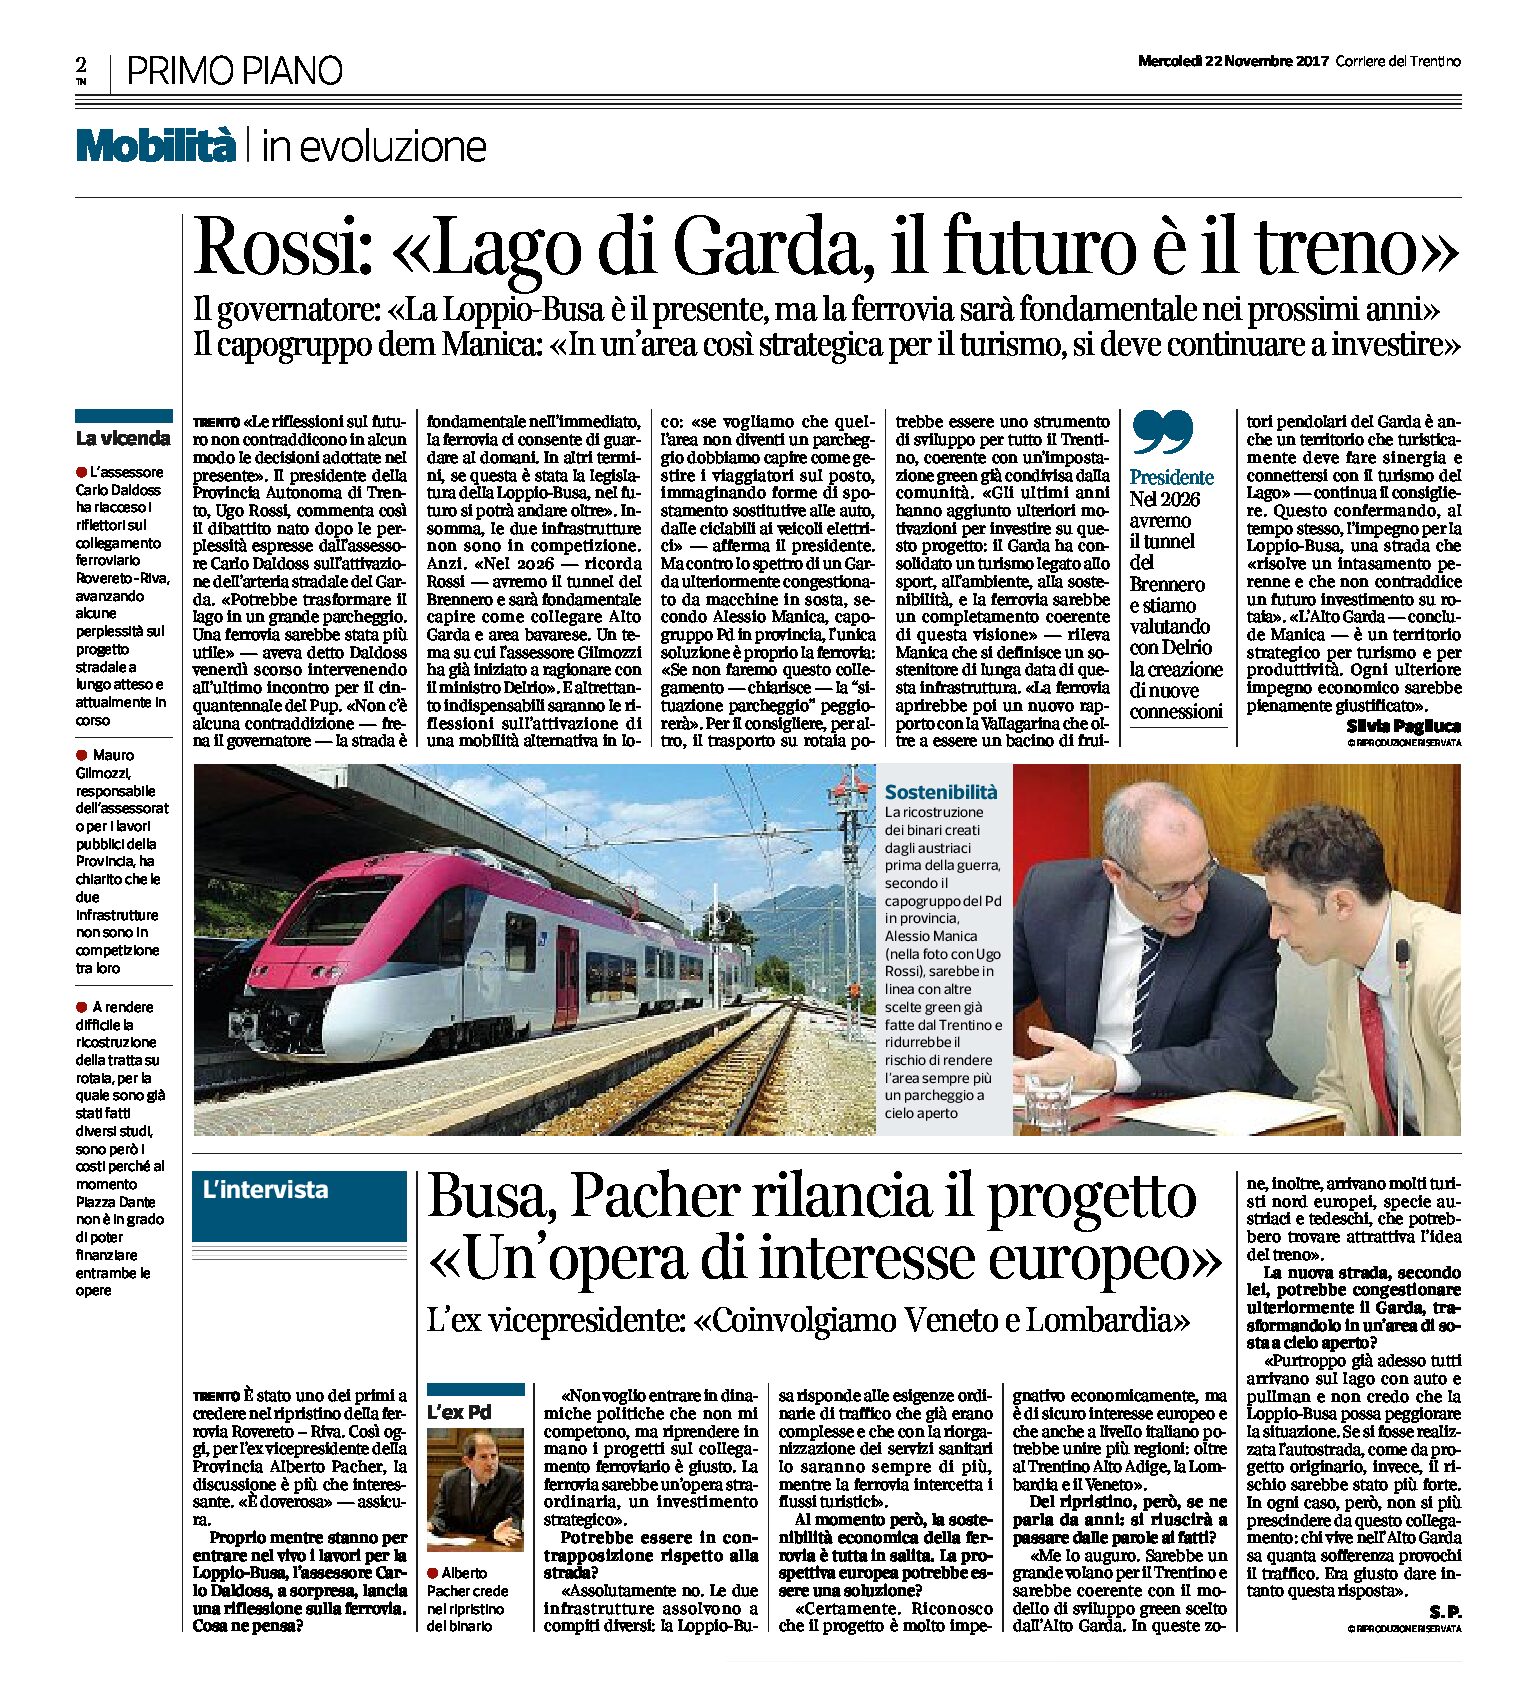 Rossi “Per il lago di Garda, Loppio Busa è il presente, ma la ferrovia sarà fondamentale nei prossimi anni”